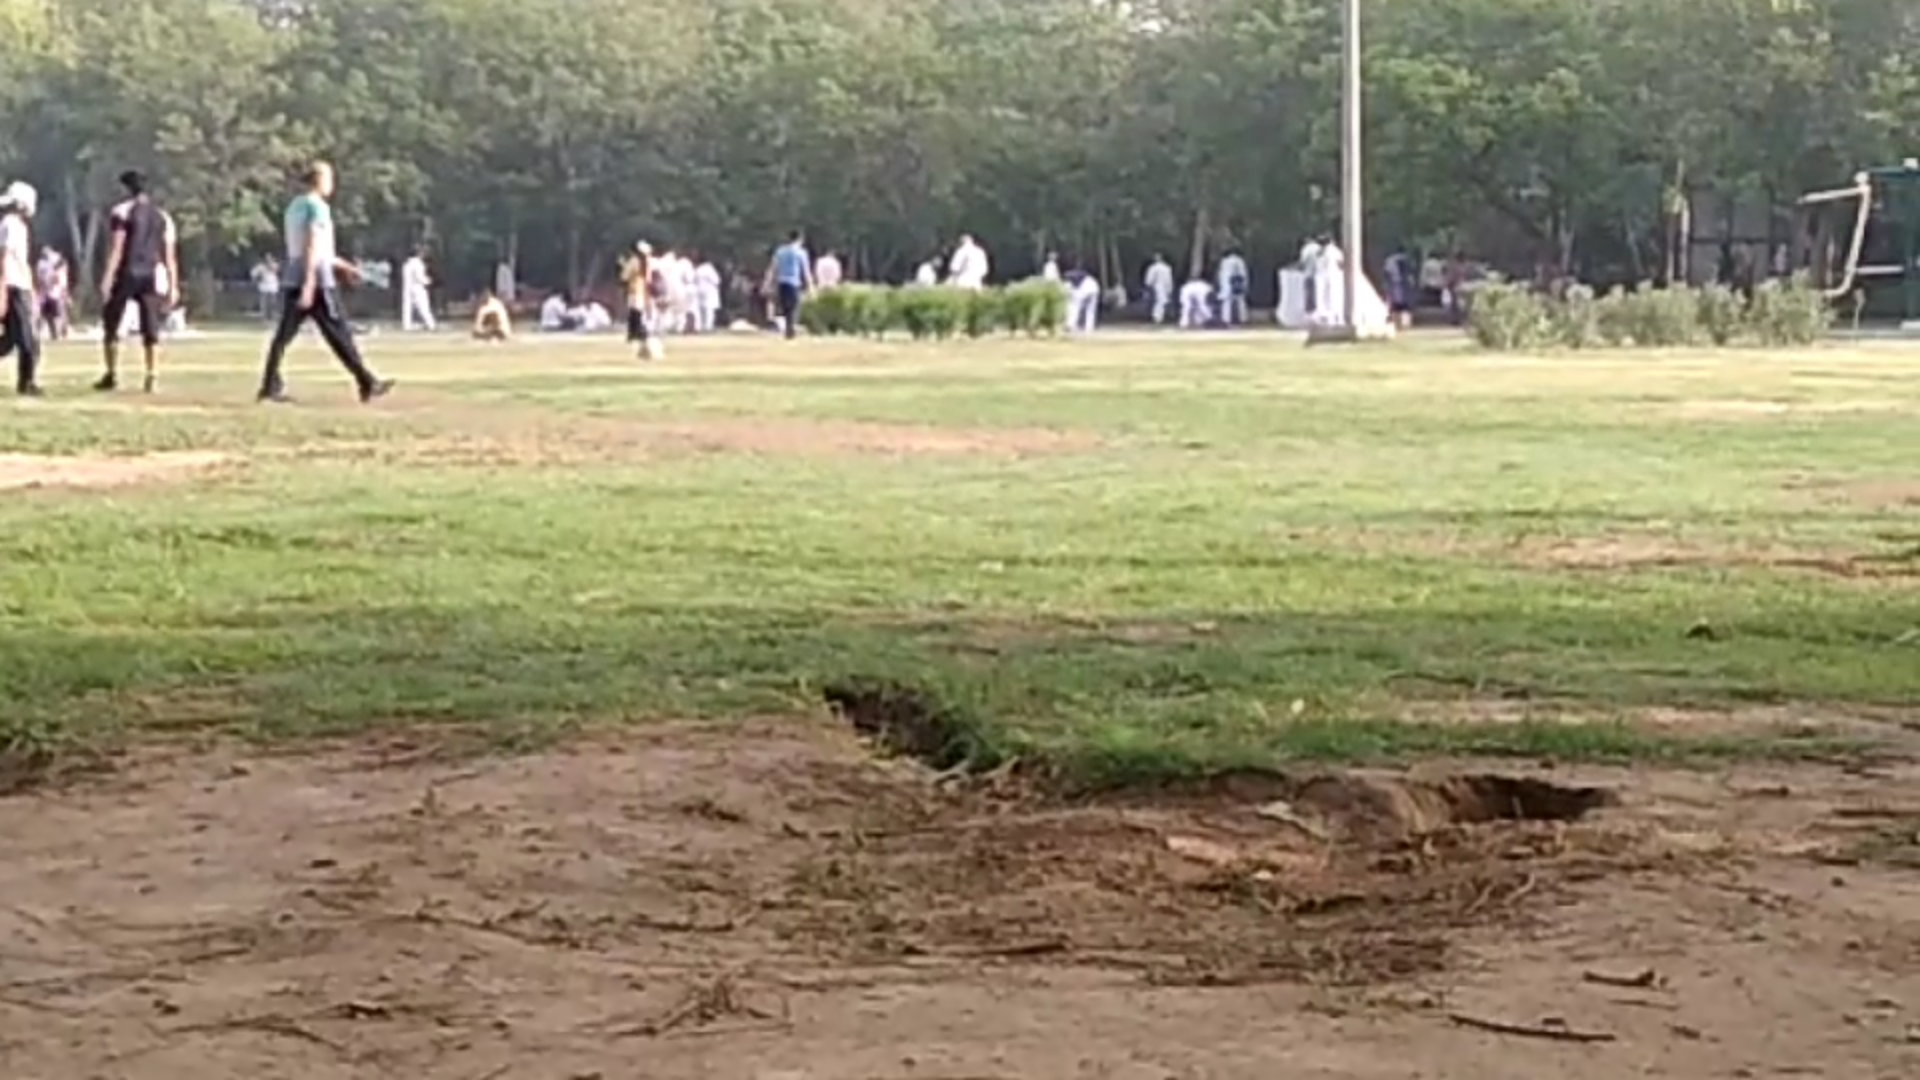 violation lockdown protocol in parks of rohini in delhi